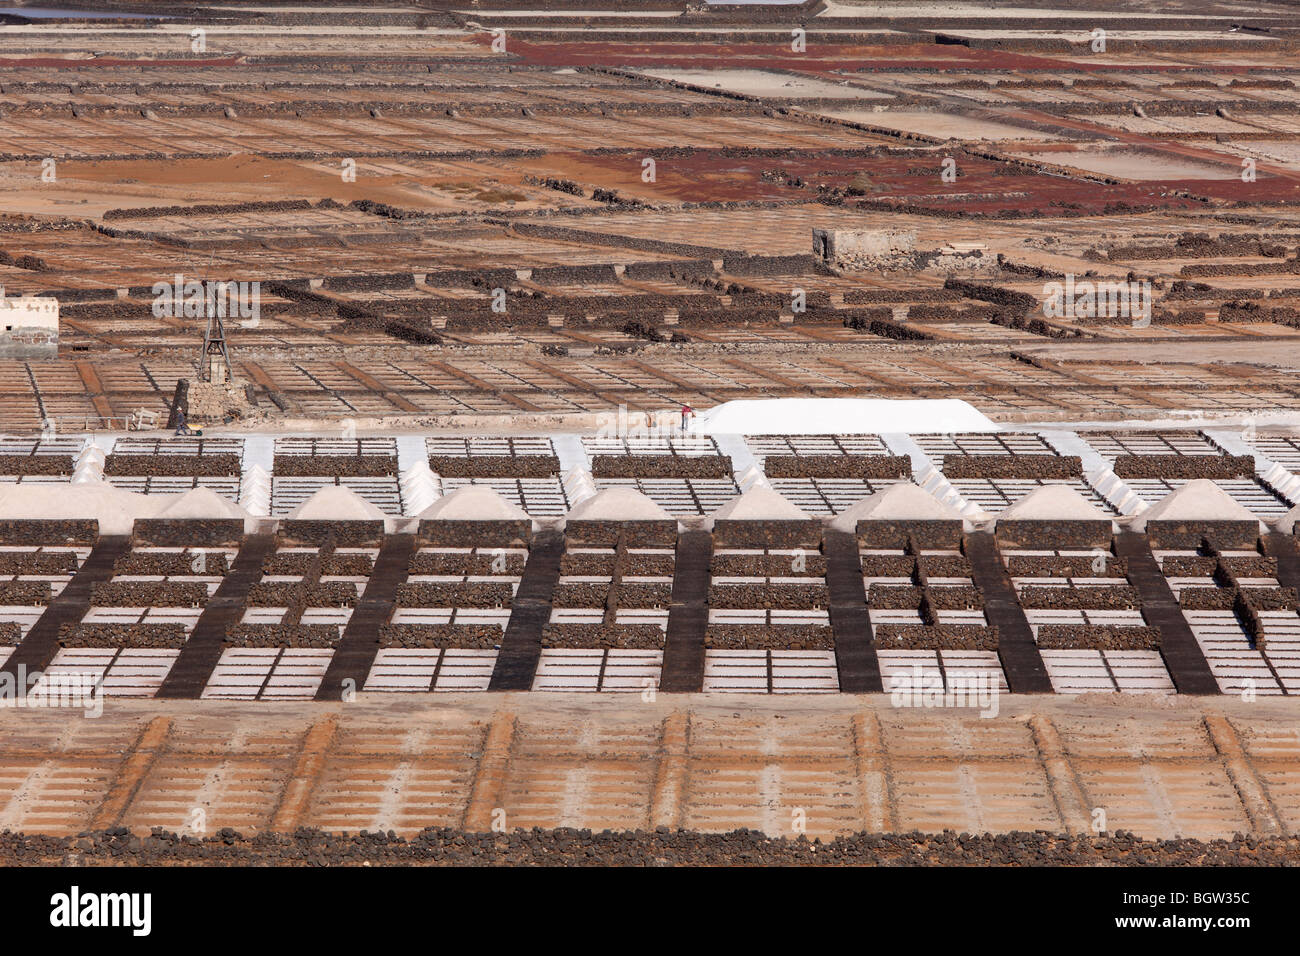 Commercial salt works, Salinas de Janubio, Lanzarote, Canary Islands, Spain, Europev Stock Photo